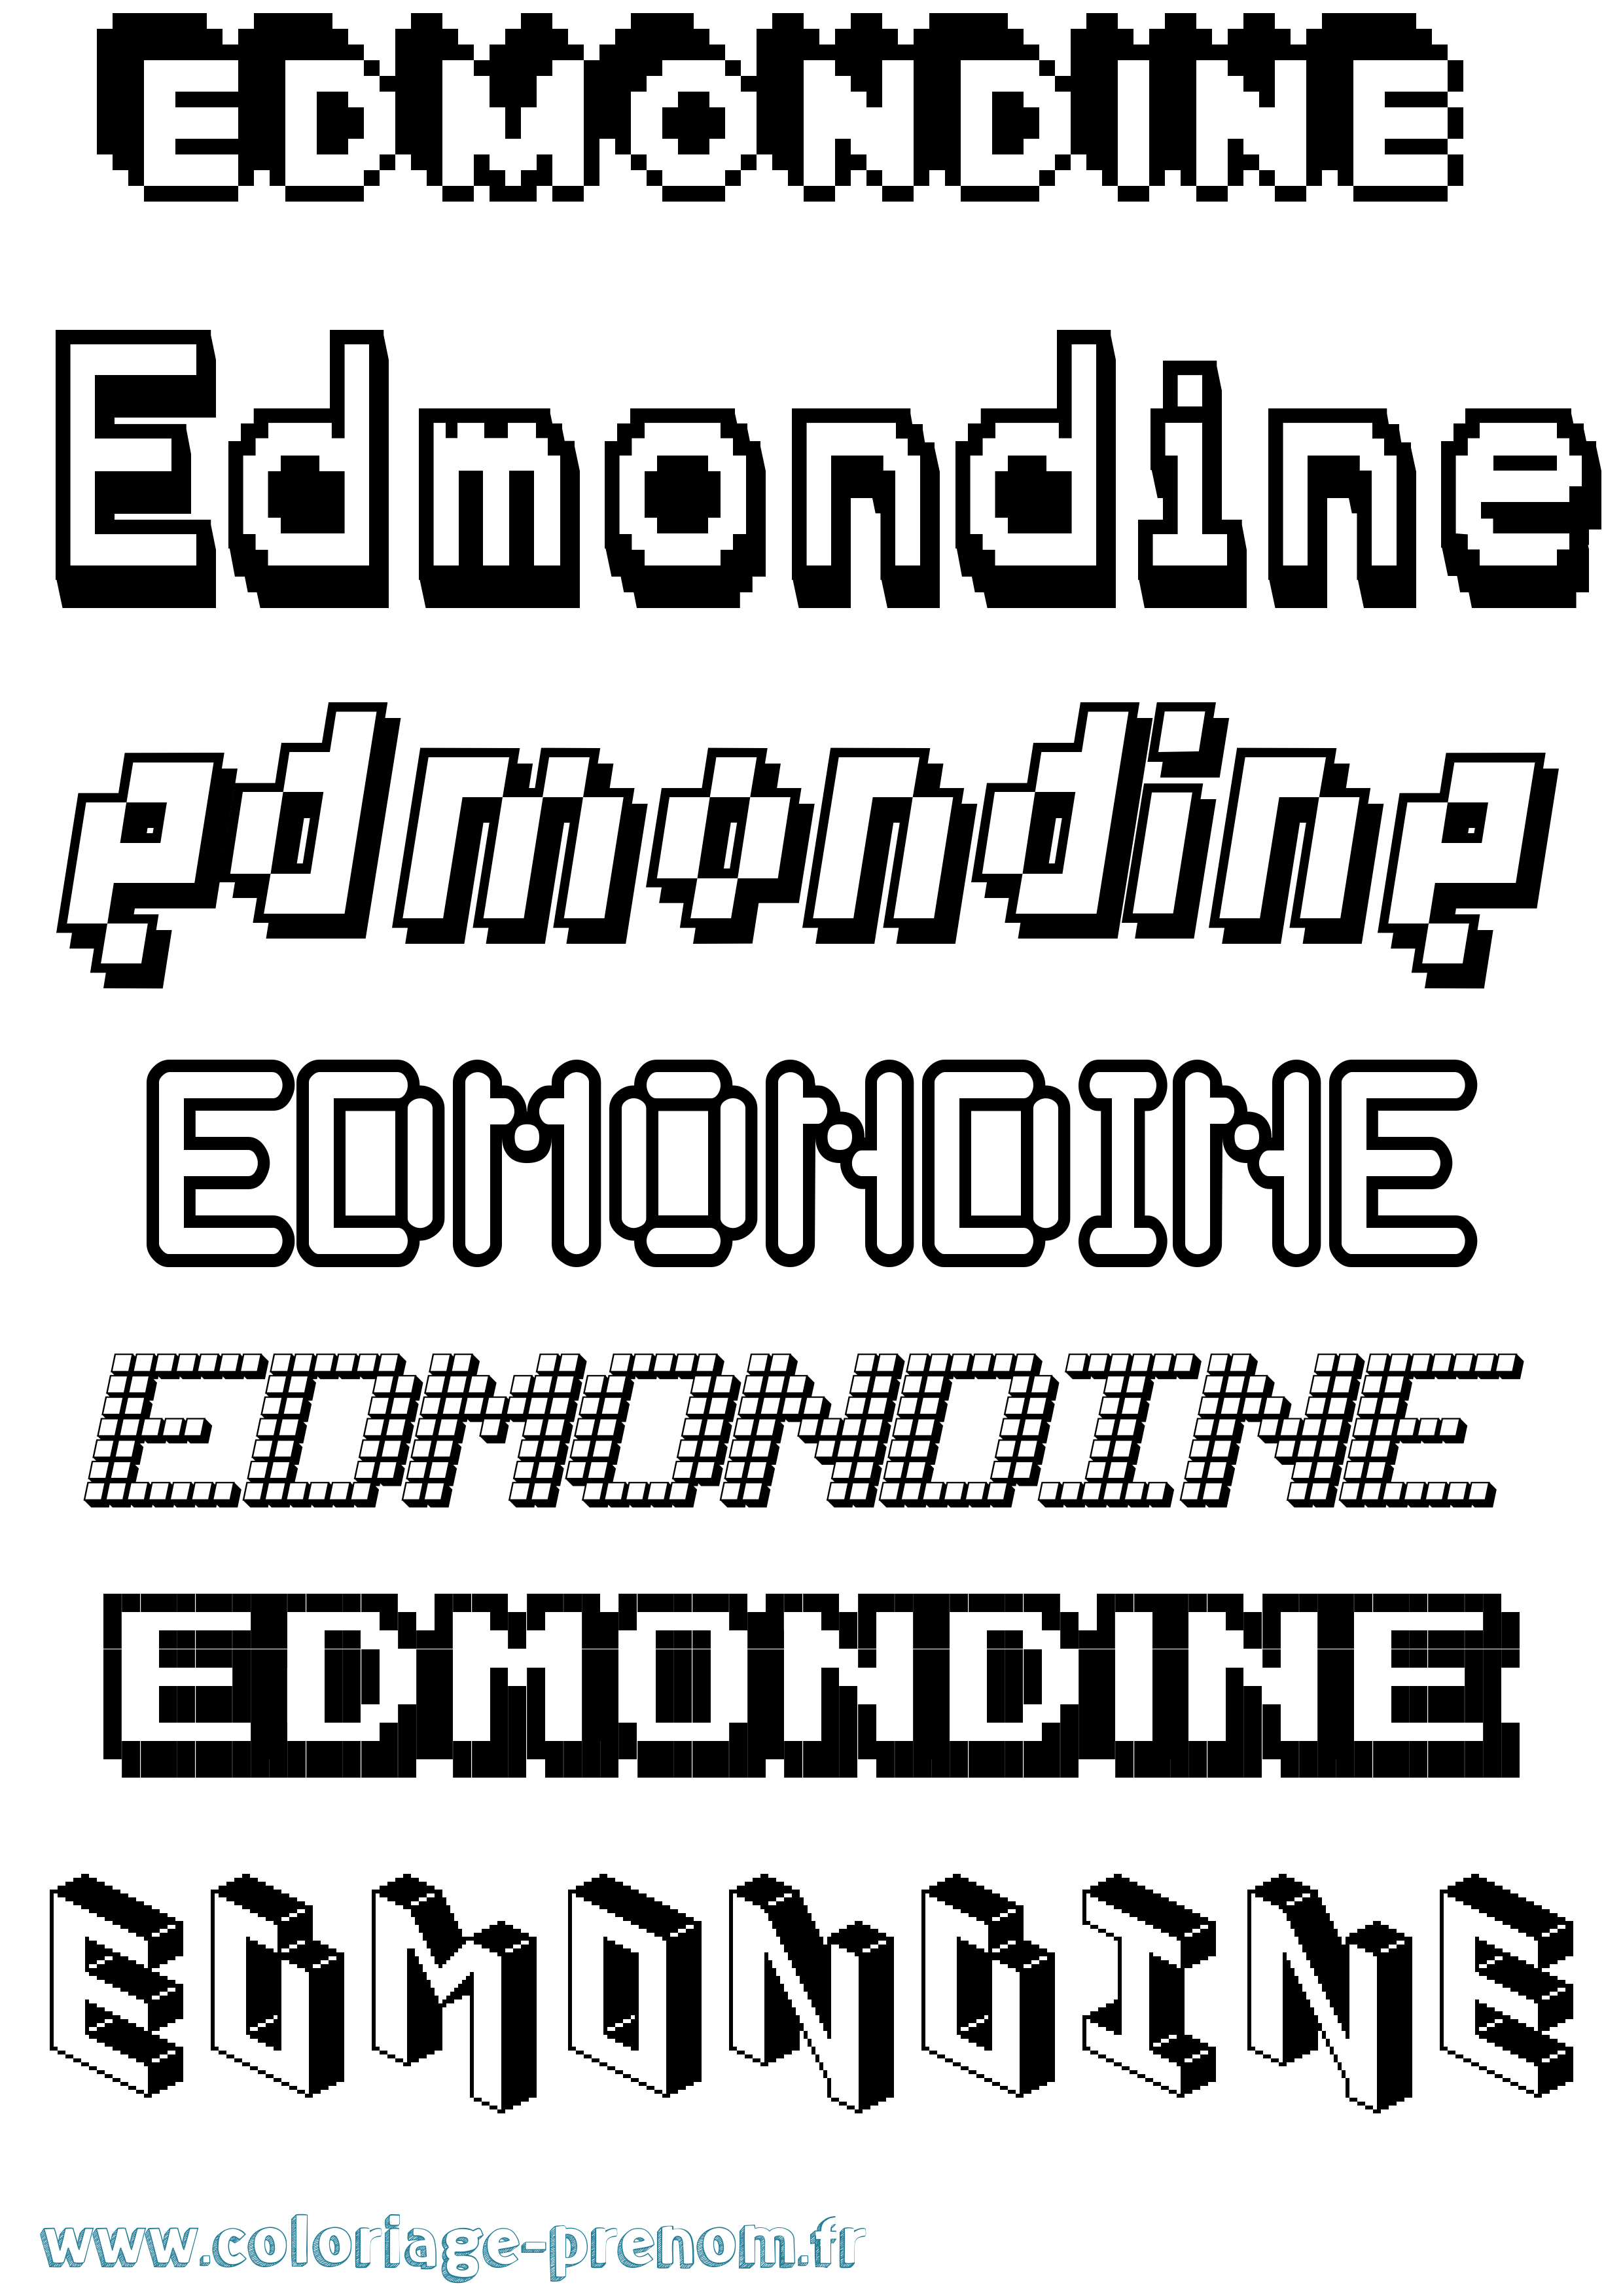 Coloriage prénom Edmondine Pixel